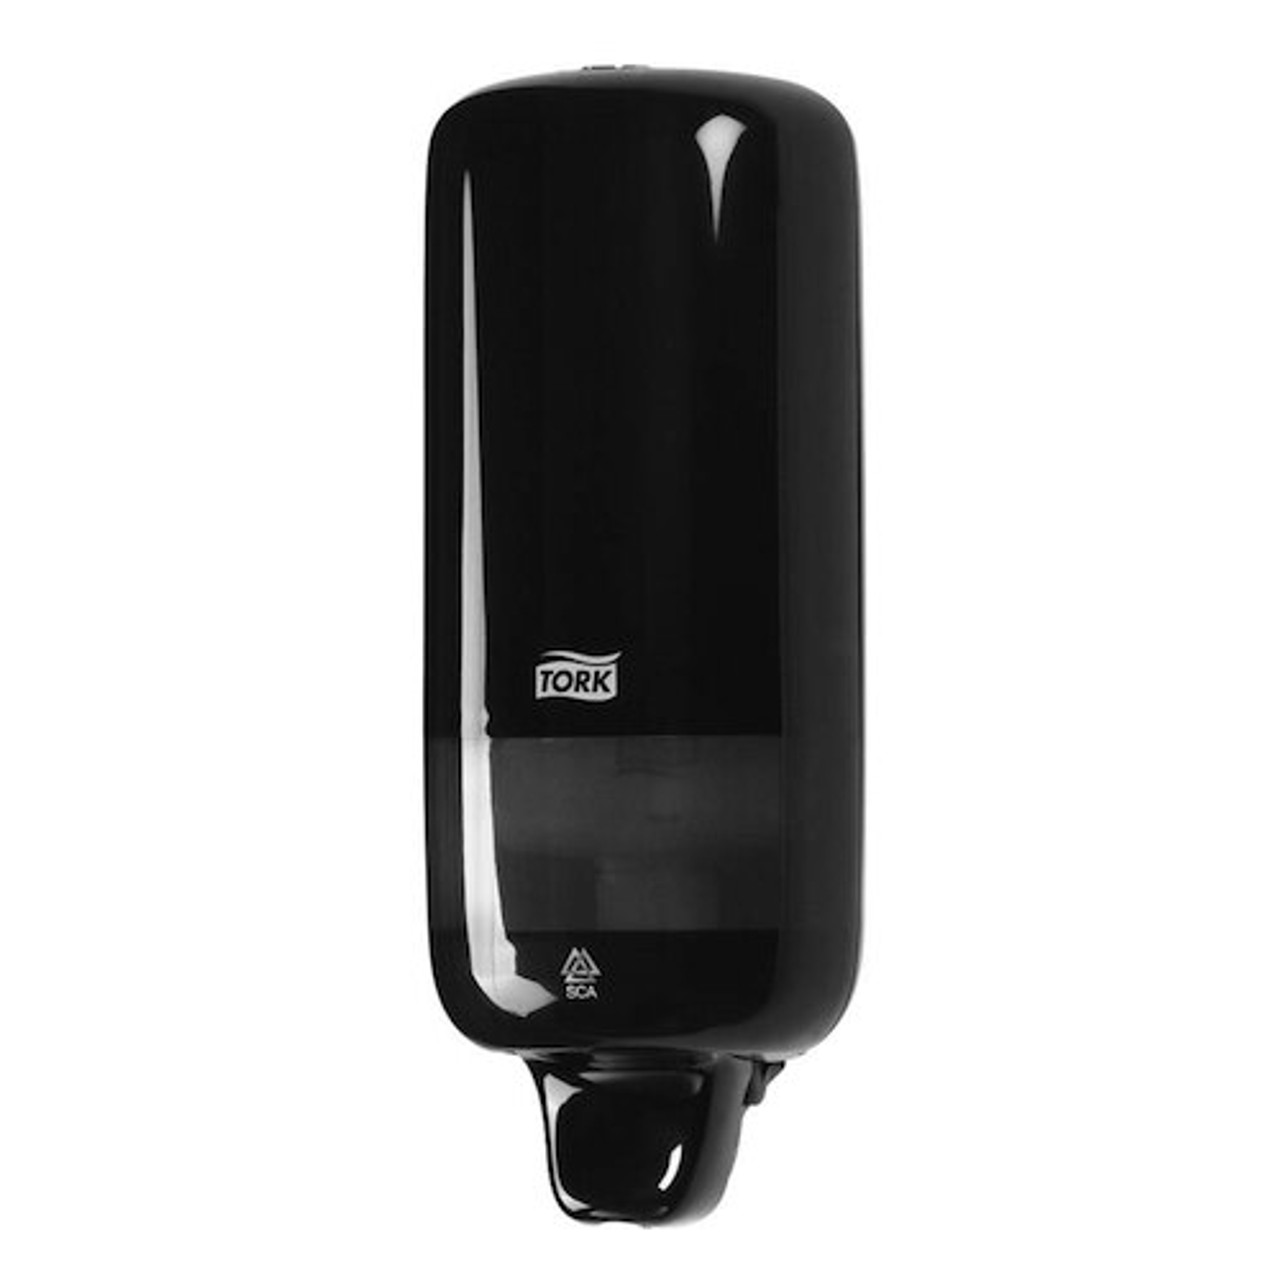 Tork Foam Soap Dispenser Black S4 System (561508)